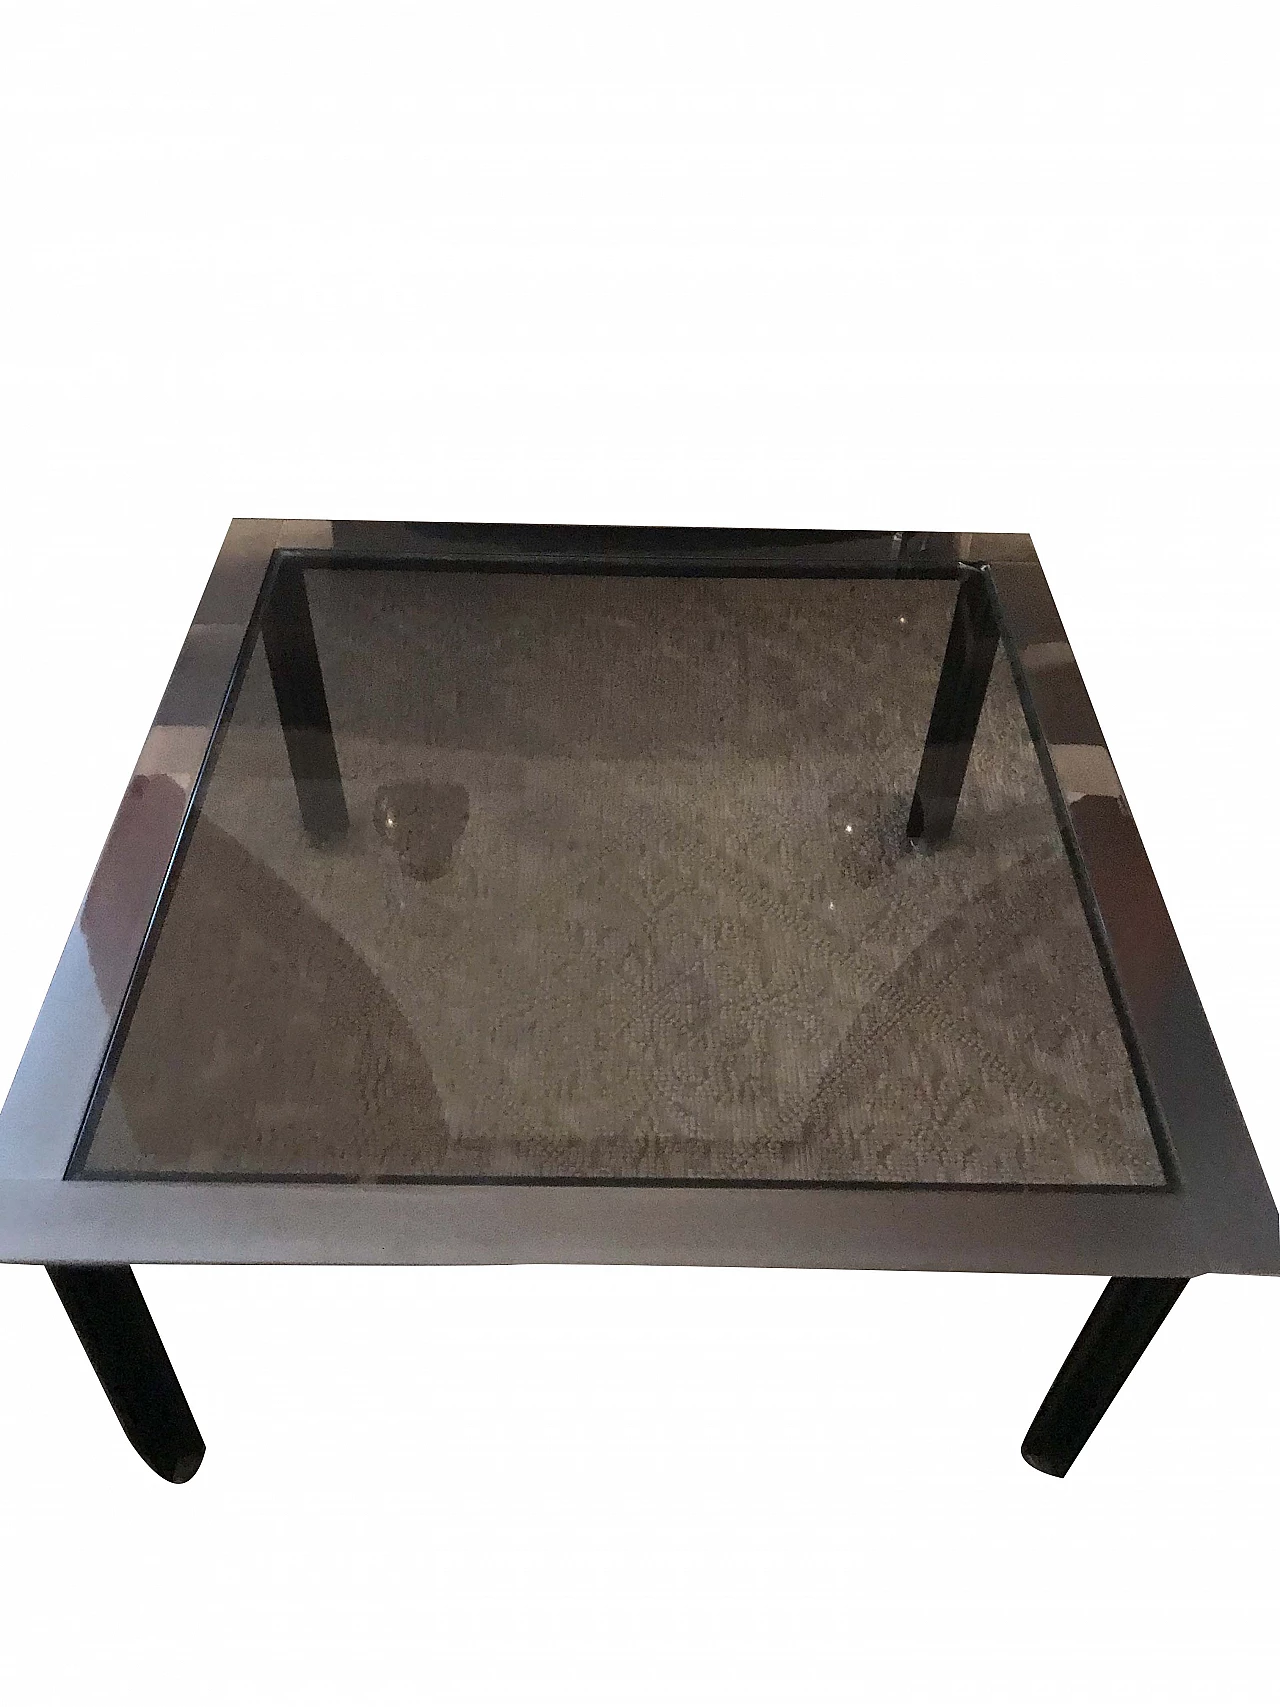 Coffee table in steel and glass, Luigi Caccia Dominioni for Azucena, '70s 1078865